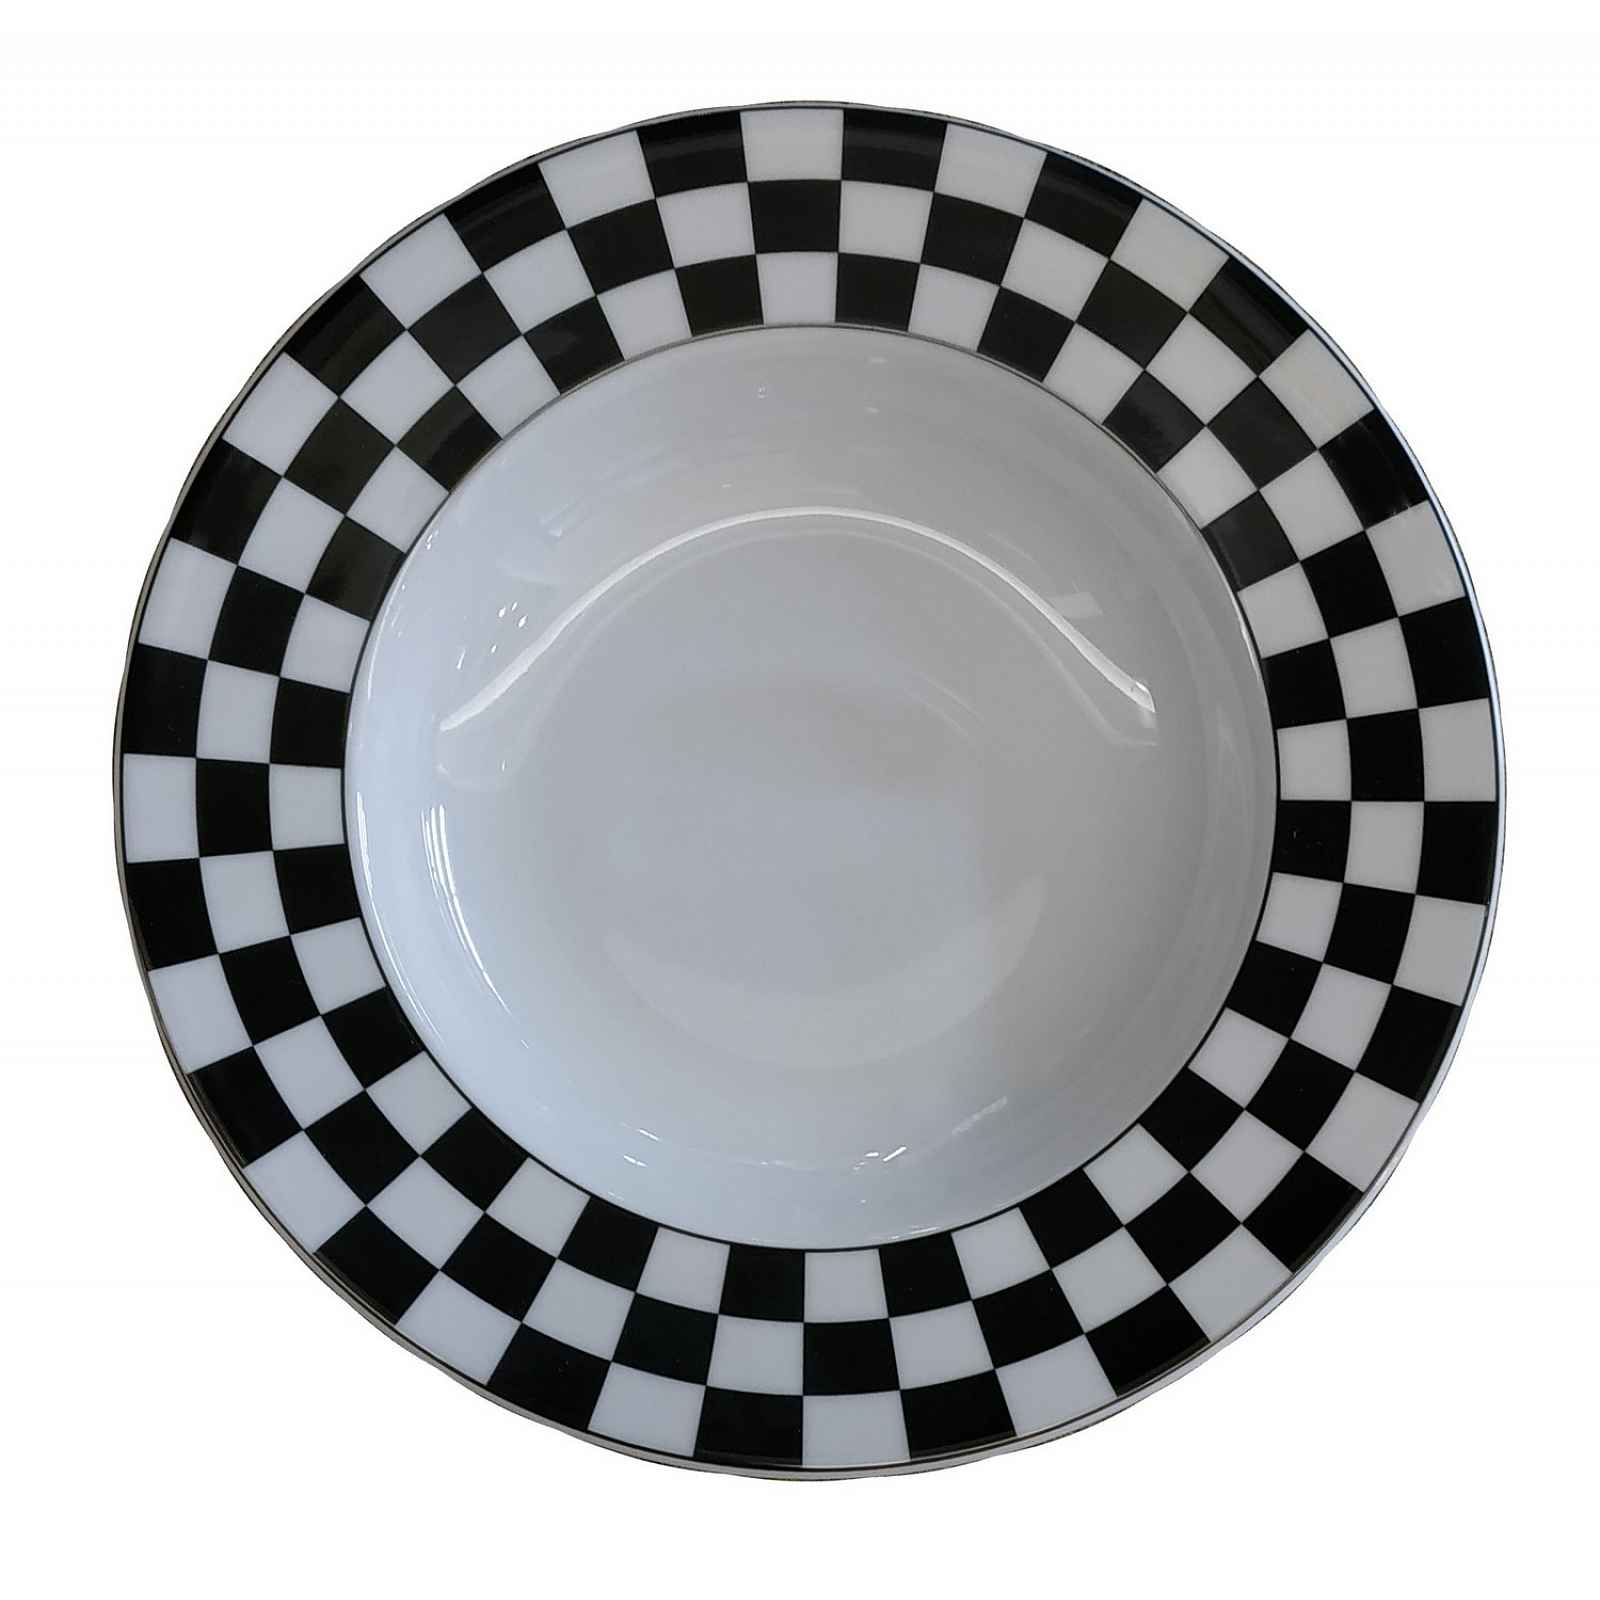 Hluboký talíř ⌀ 22 cm Basic Karos, černo-bílá šachovnice